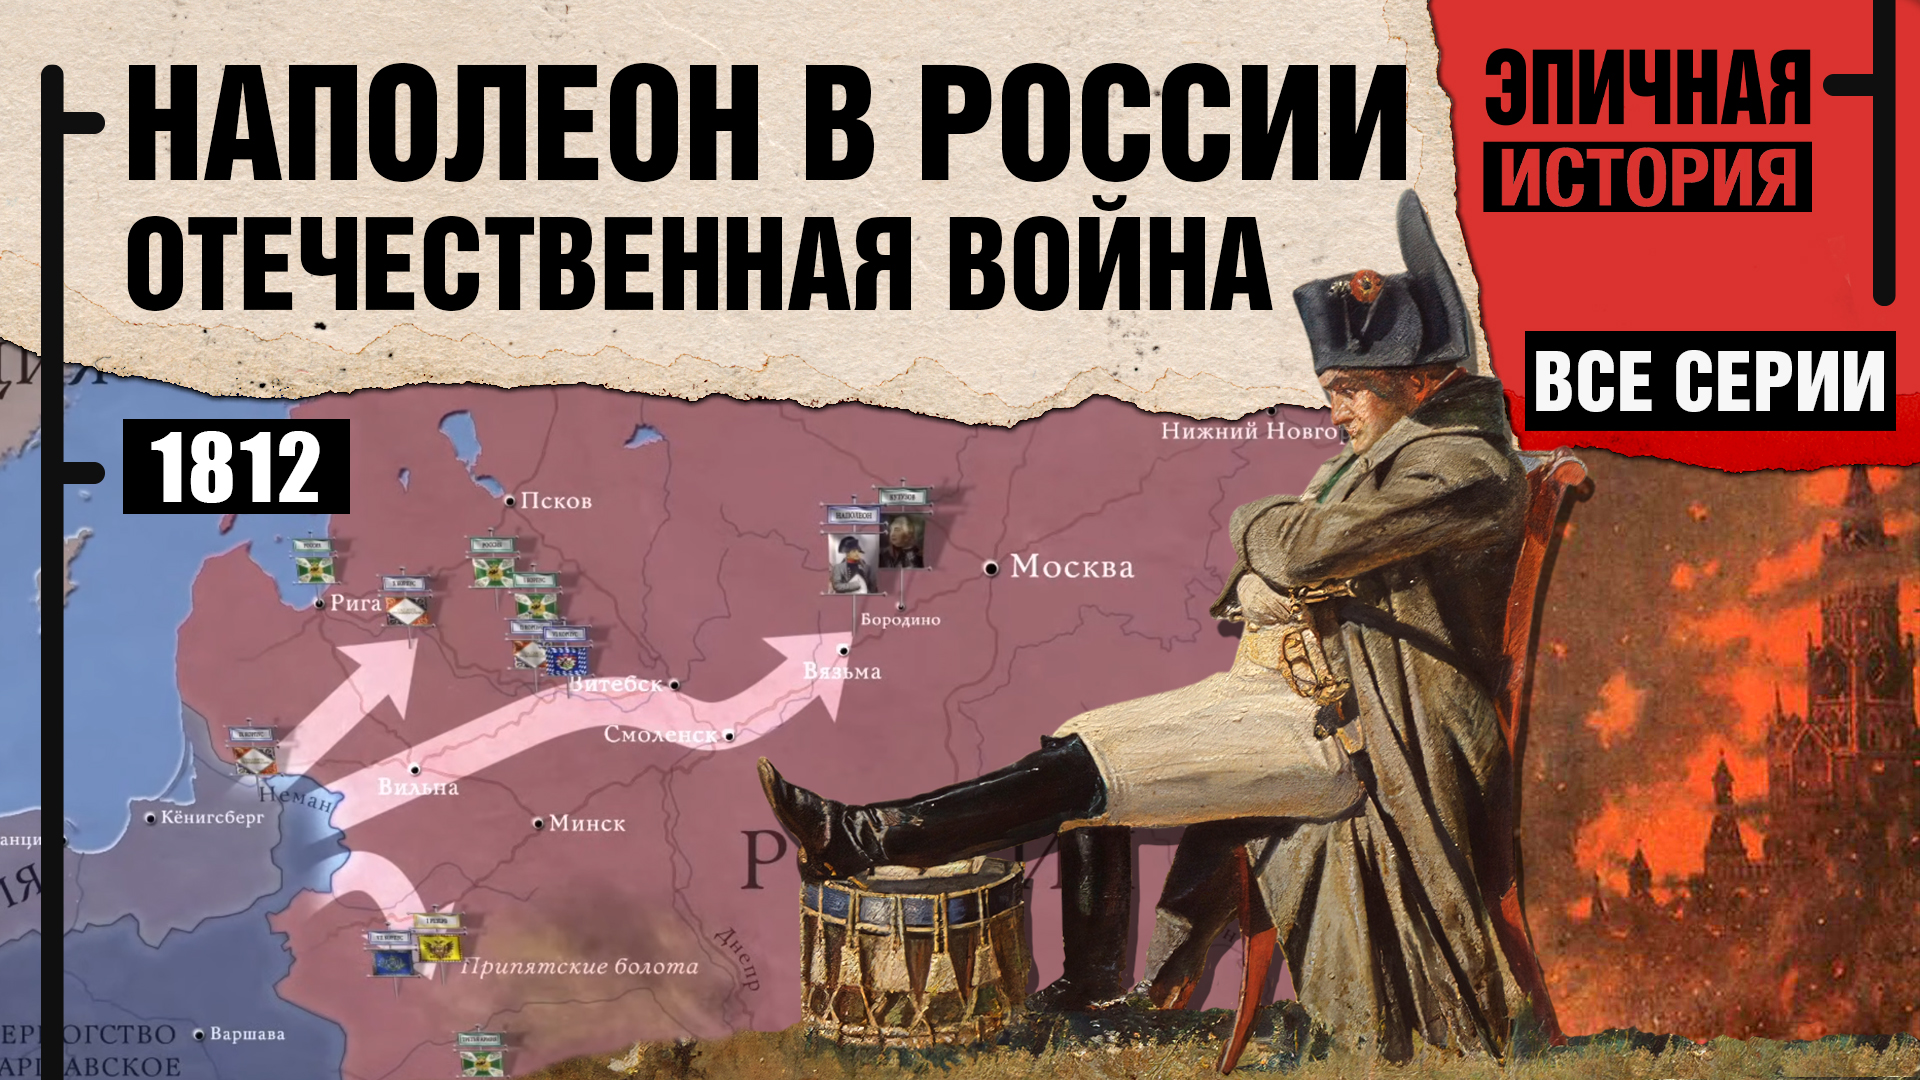 Наполеон в России. Все серии. Отечественная война 1812 года